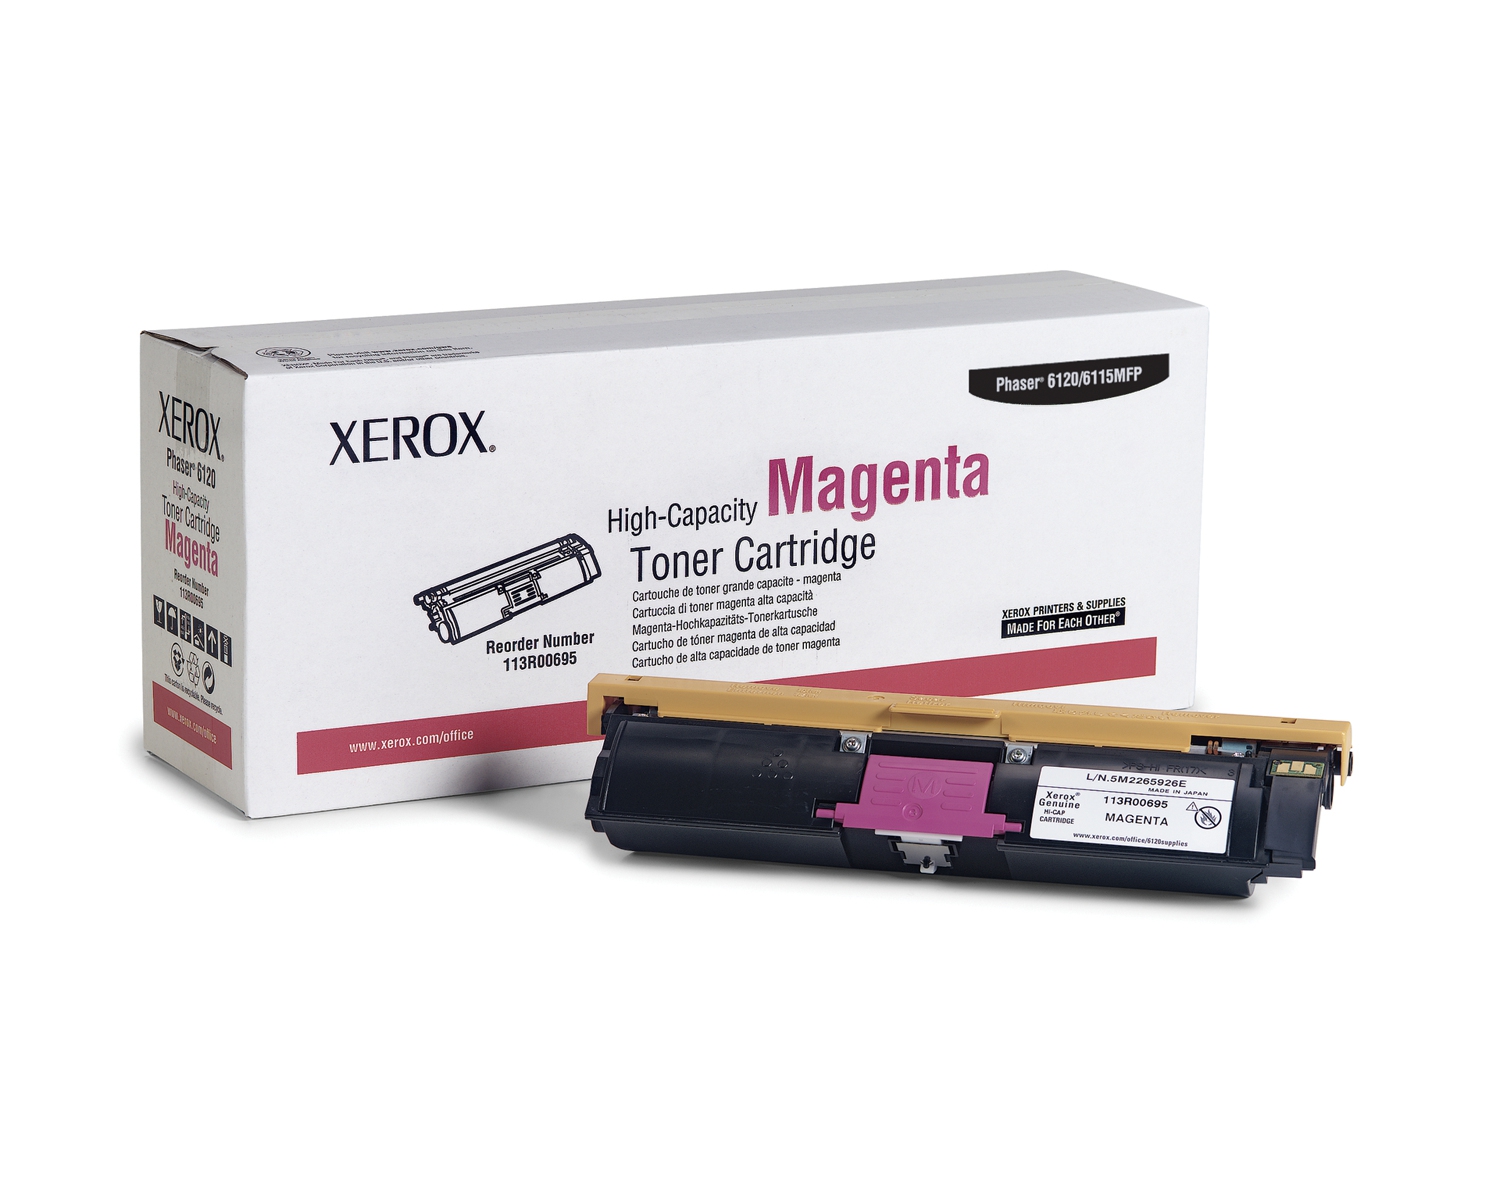 Xerox Toner Cartridge Magenta 4.500vel 1 Pack